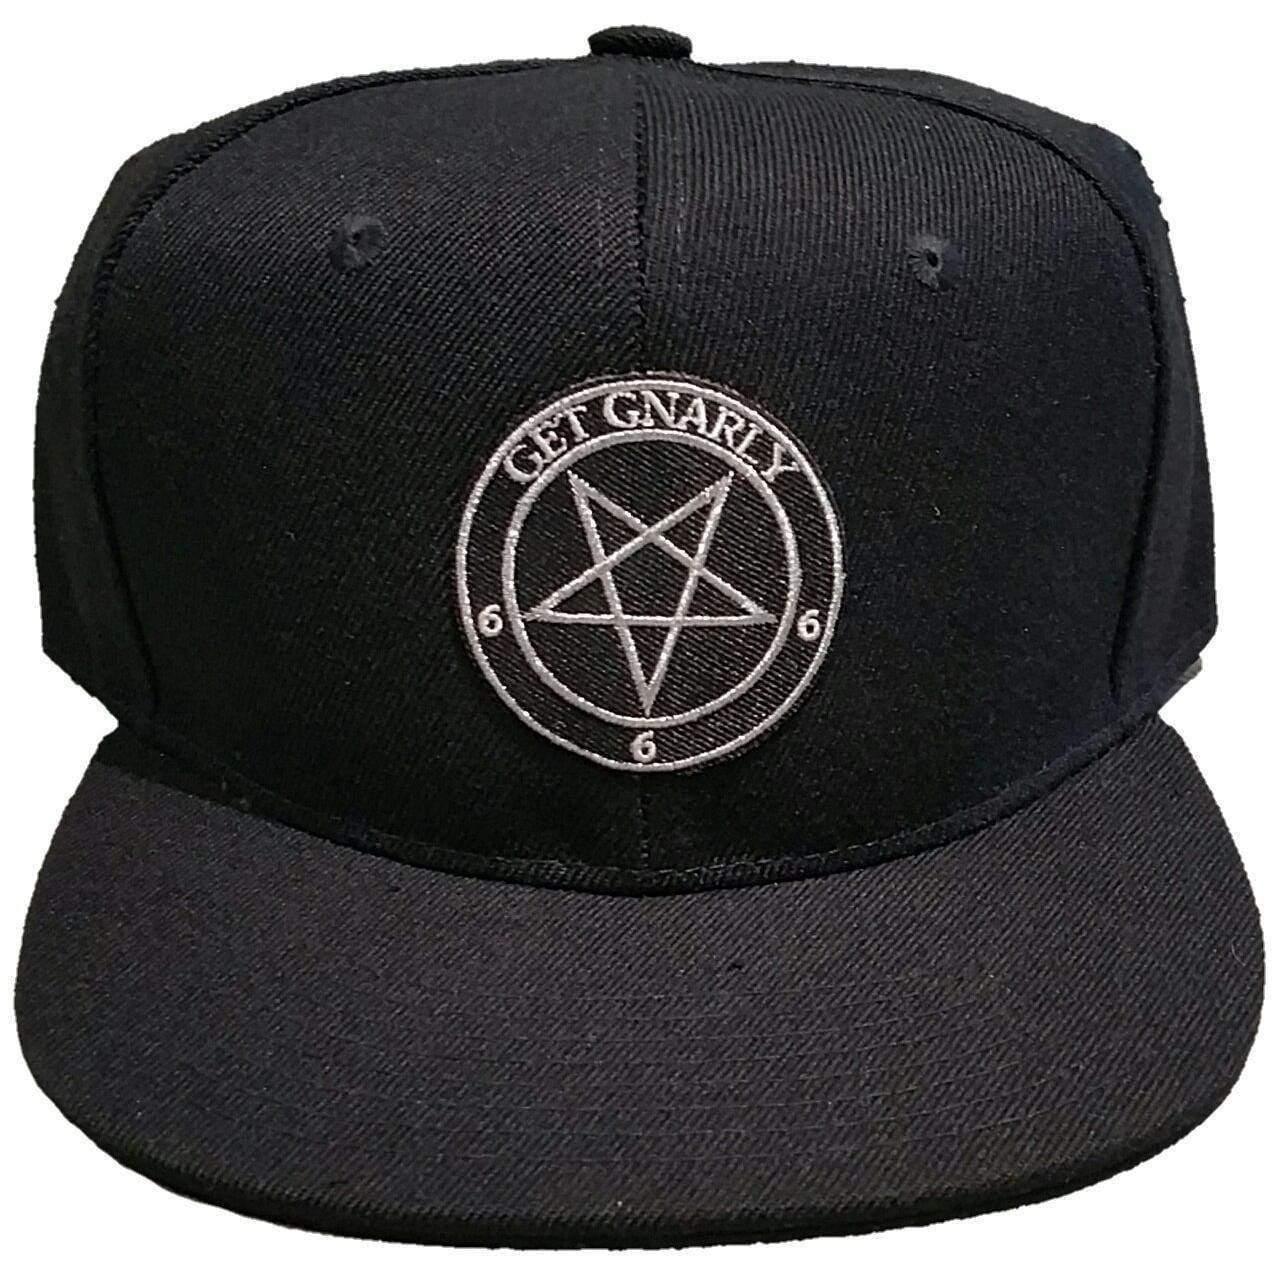 Pentagram Snapback-Hat-Get Gnarly 